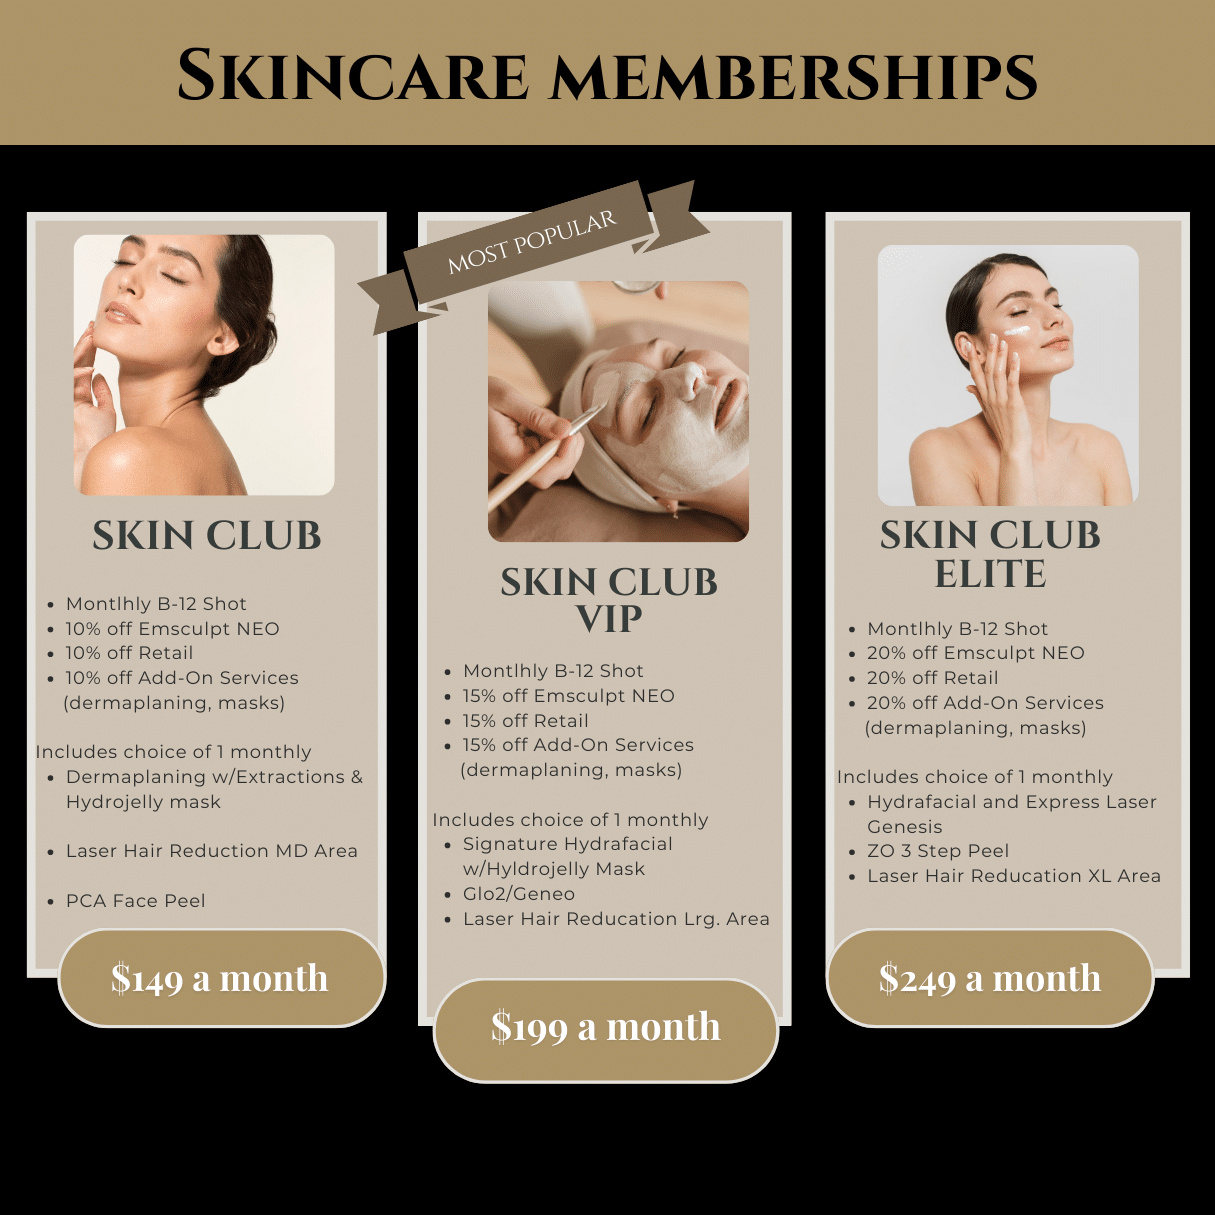 Skincare Memberships